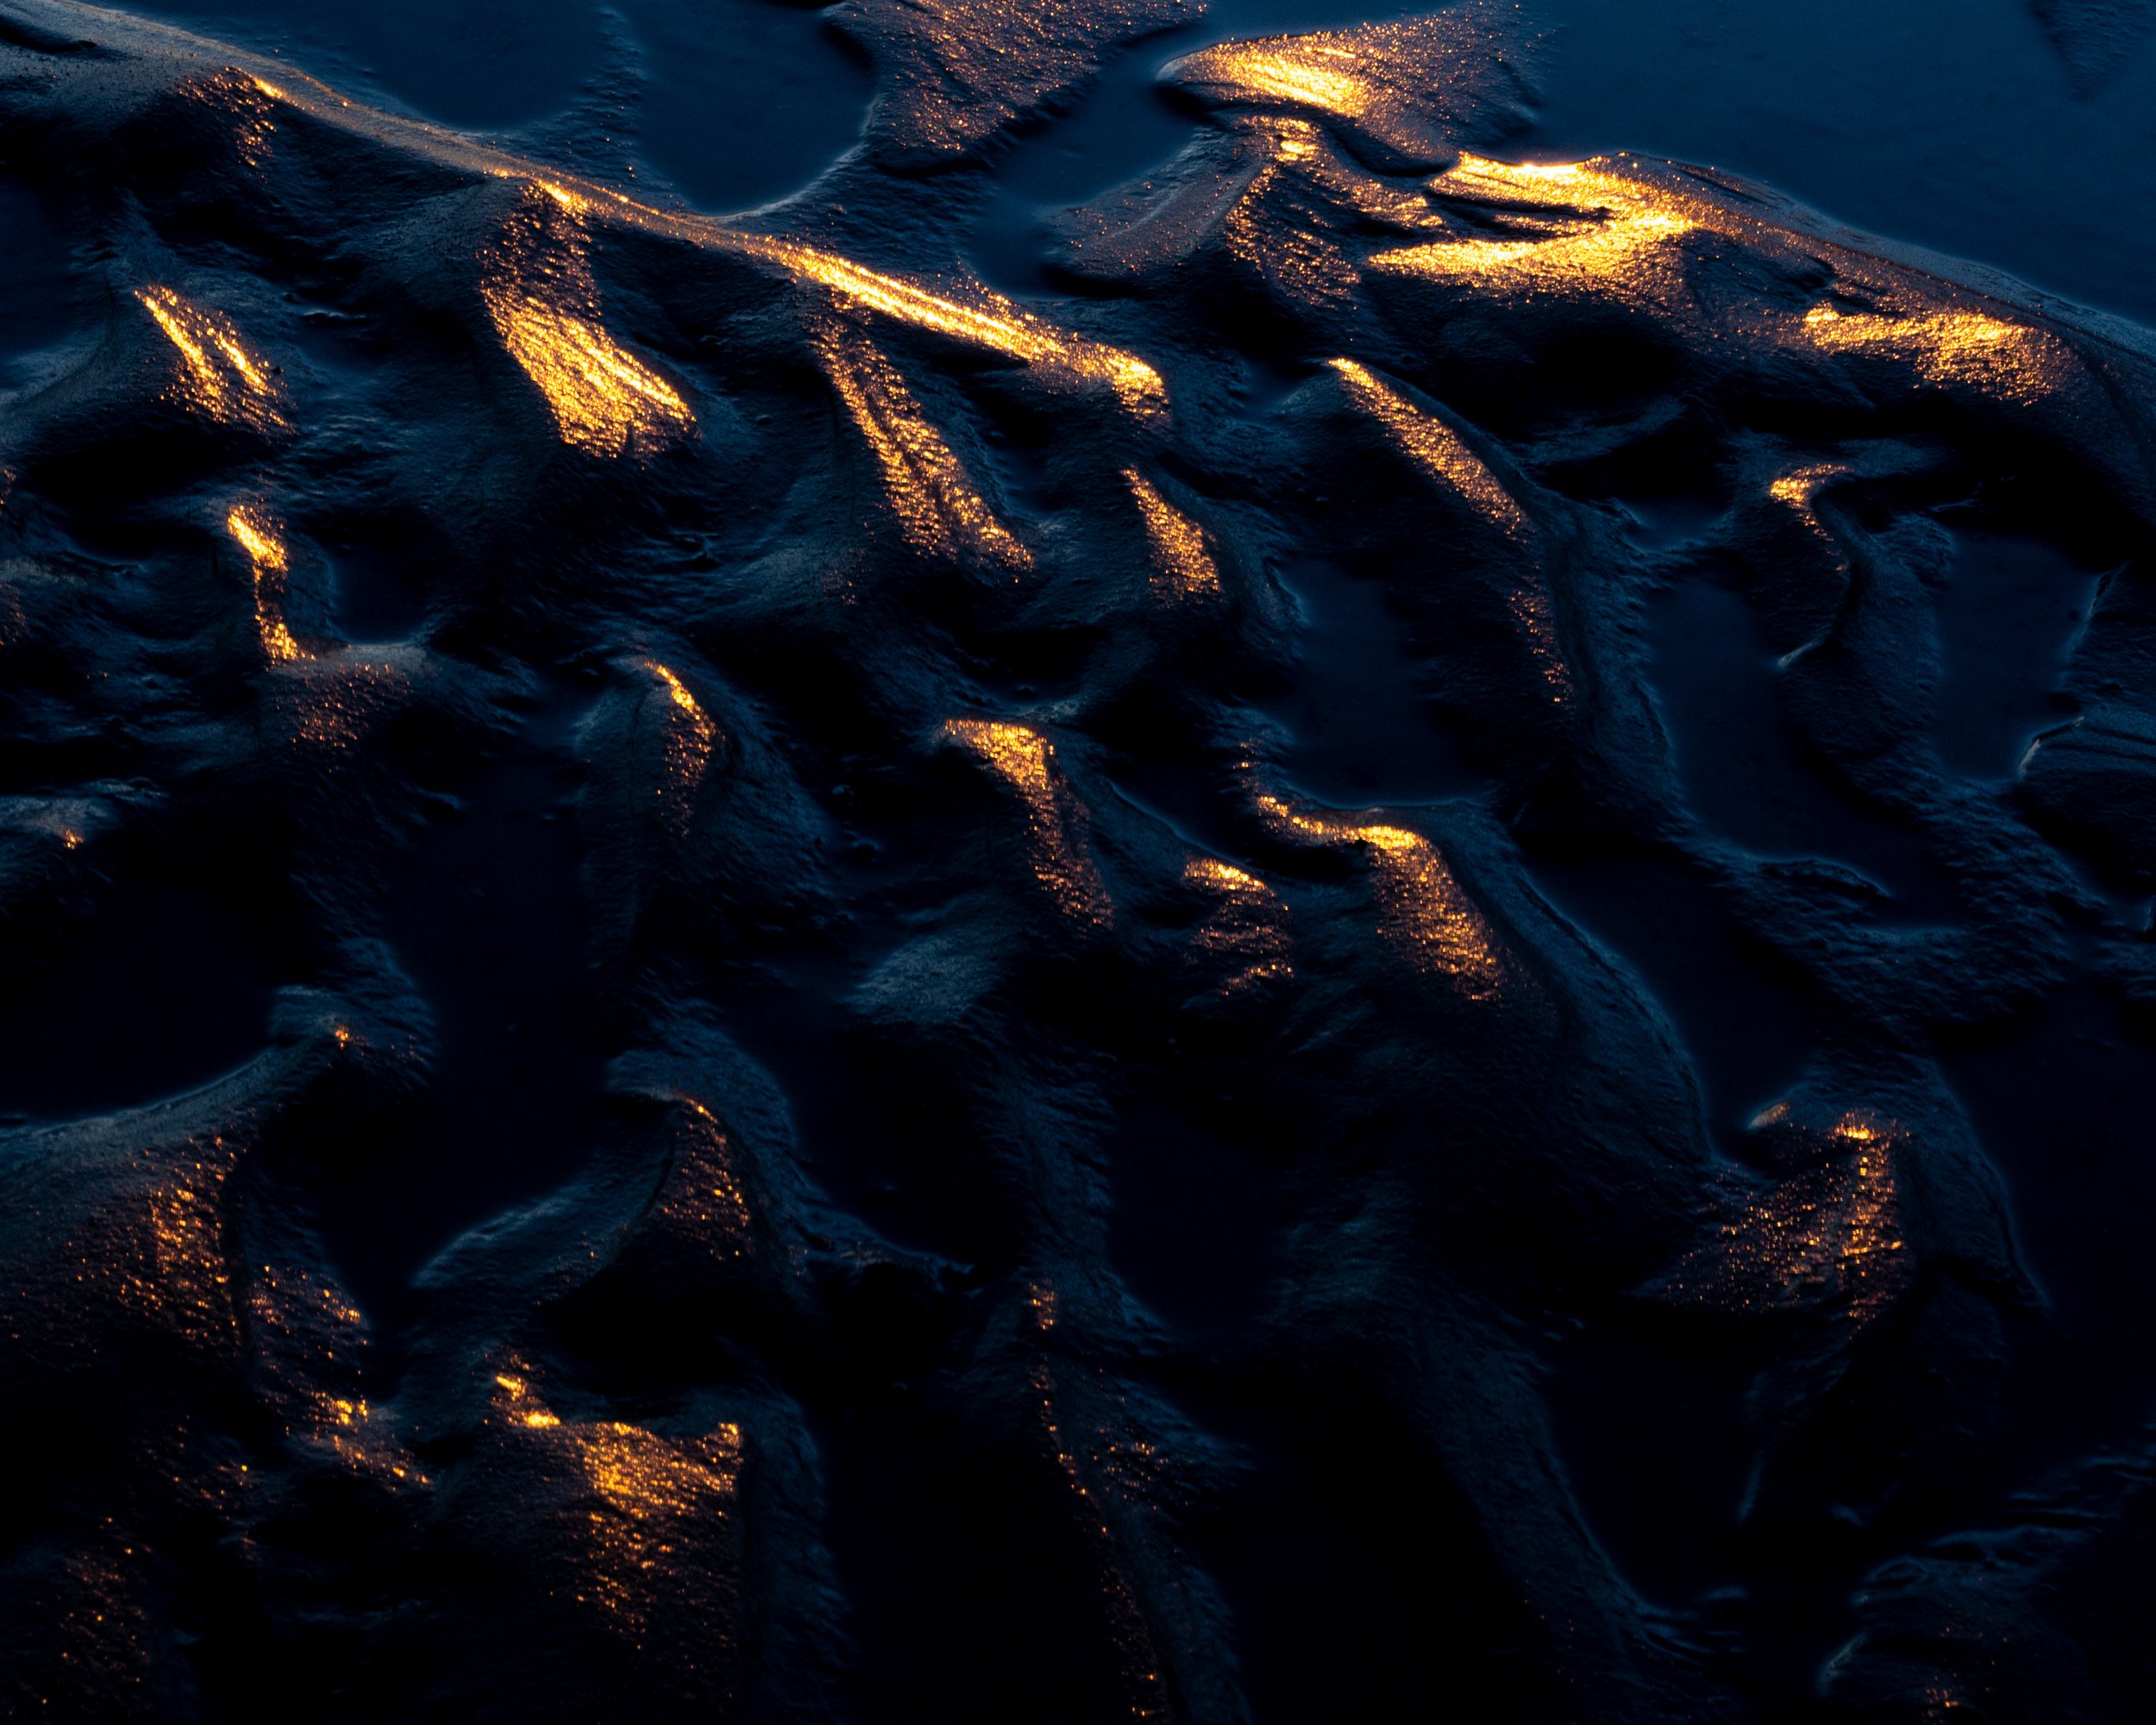  Sandstrukturen im Watt, hervorgehoben durch den Sonnenuntergang und wiederum starke Unterbelichtung. 